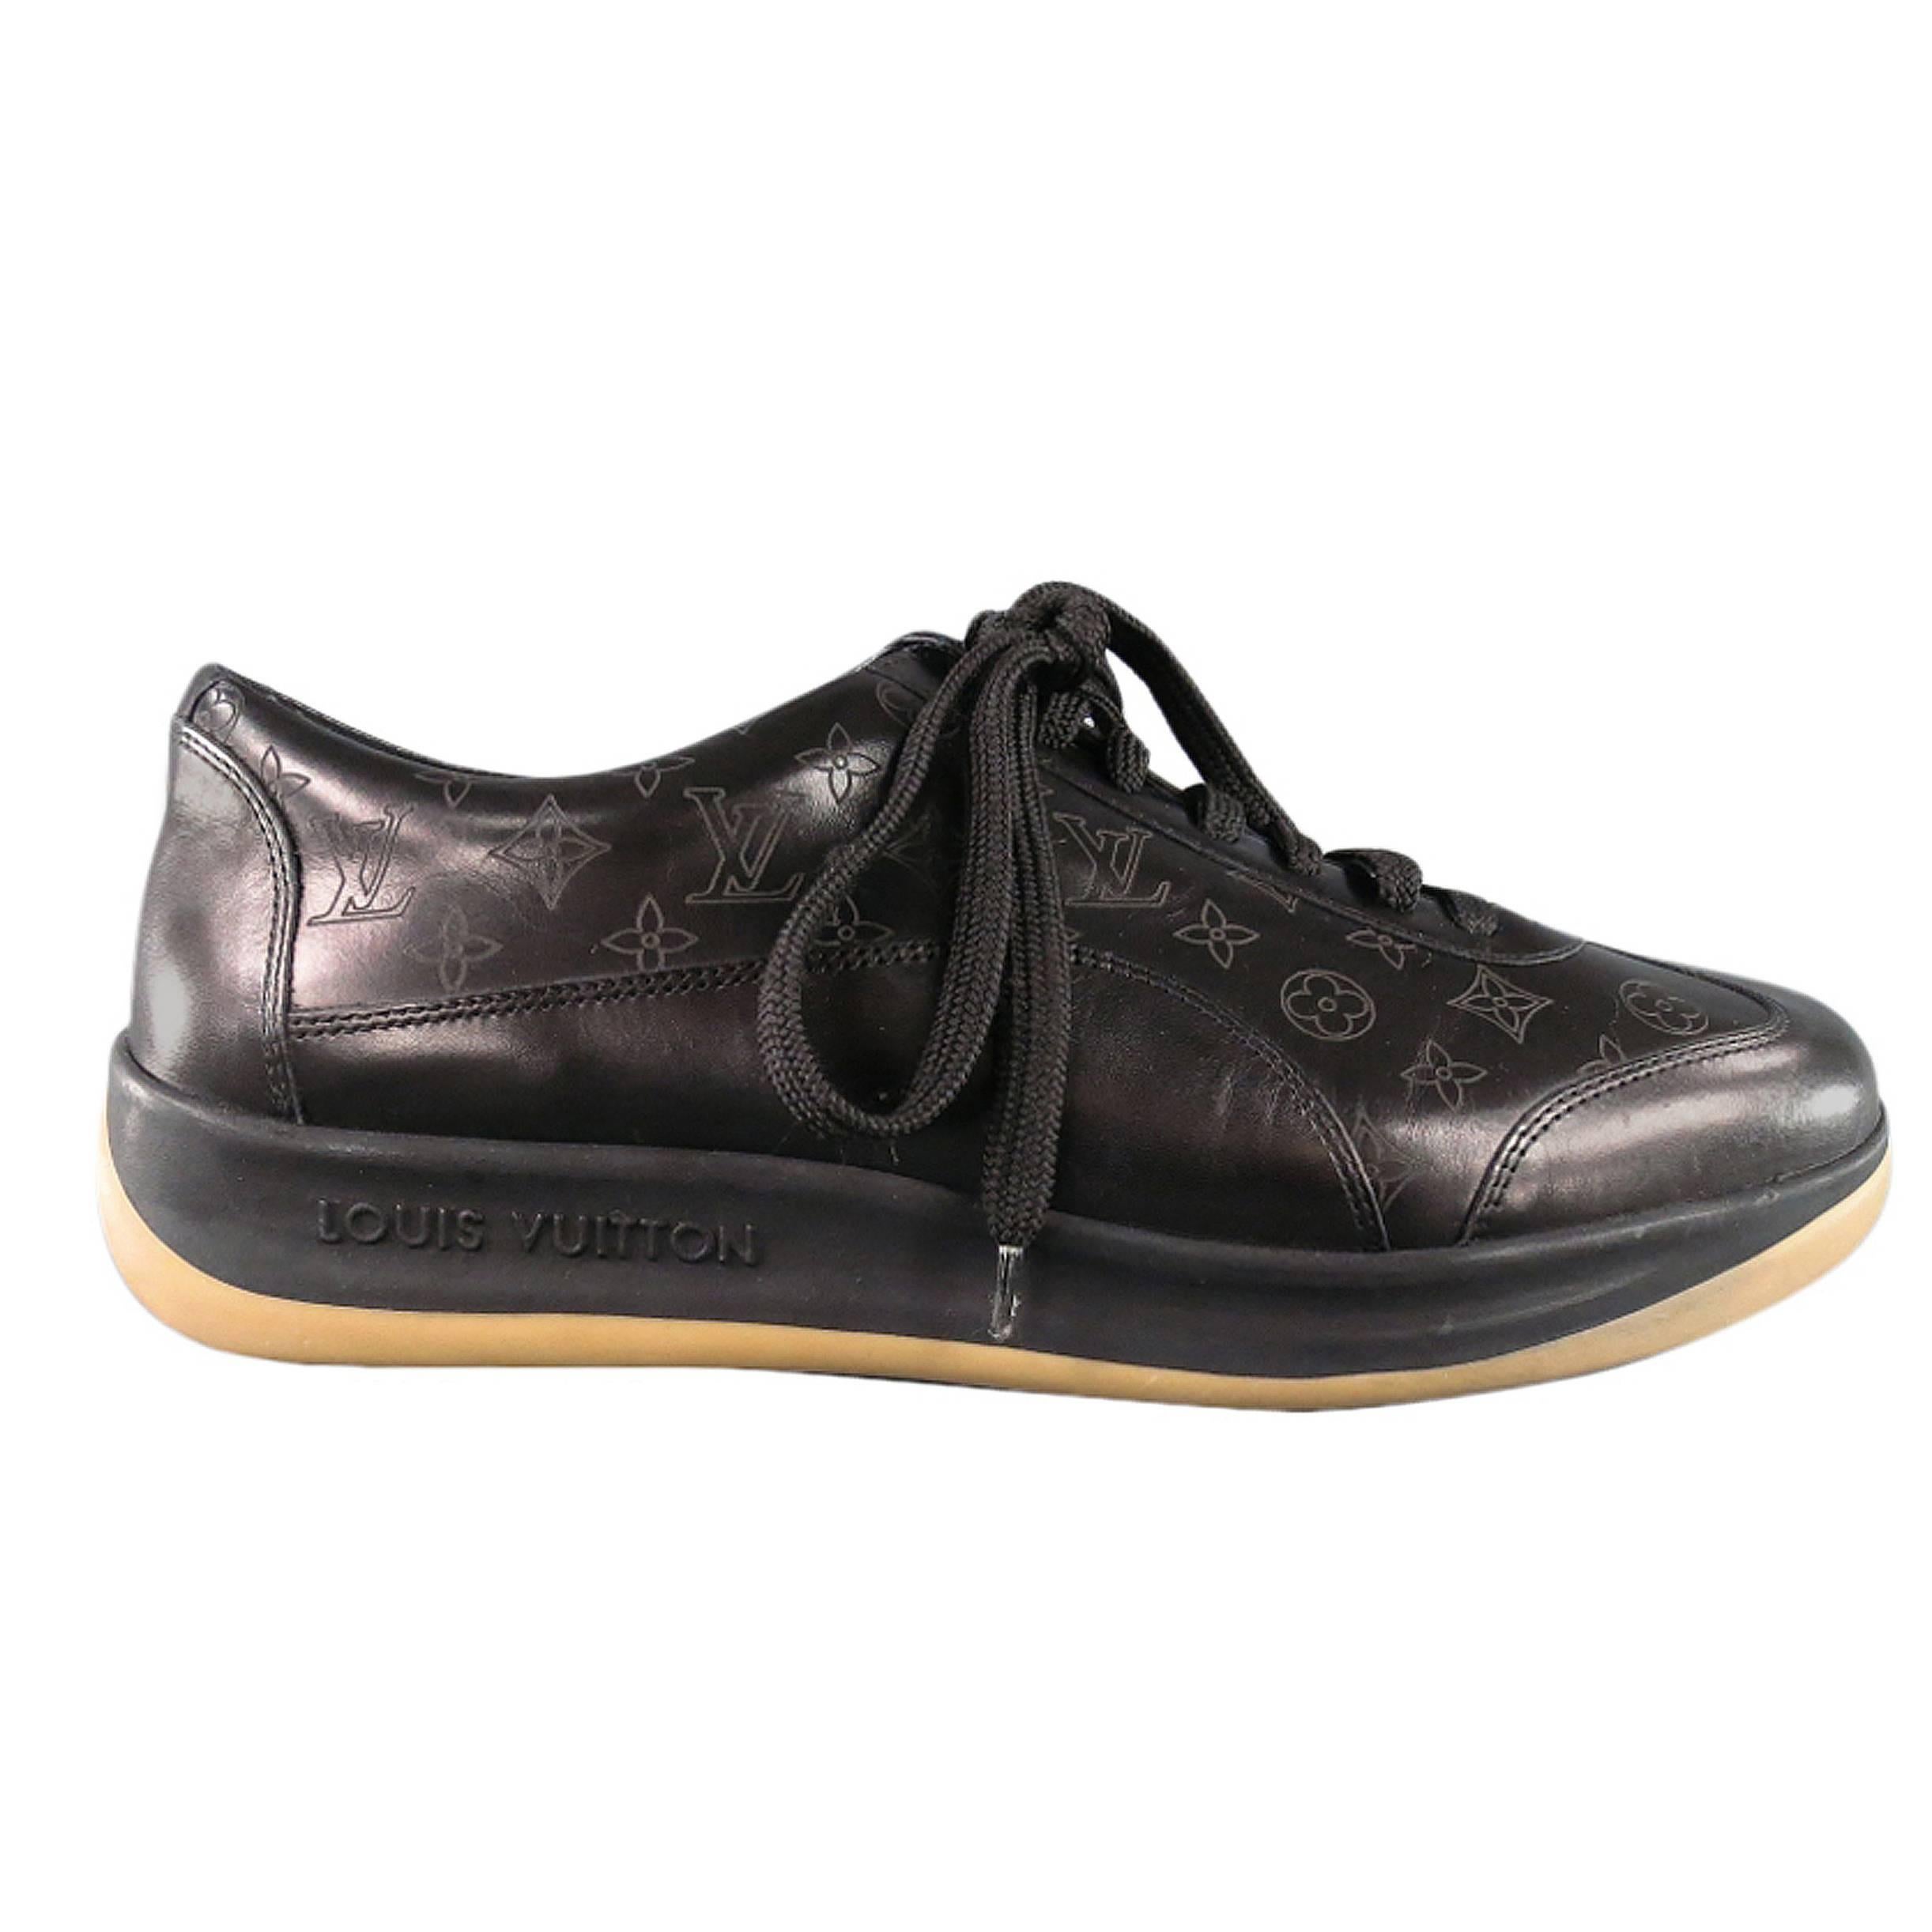 Men's LOUIS VUITTON Size 7.5US Black Leather Monogram Thick Sole Sneaker